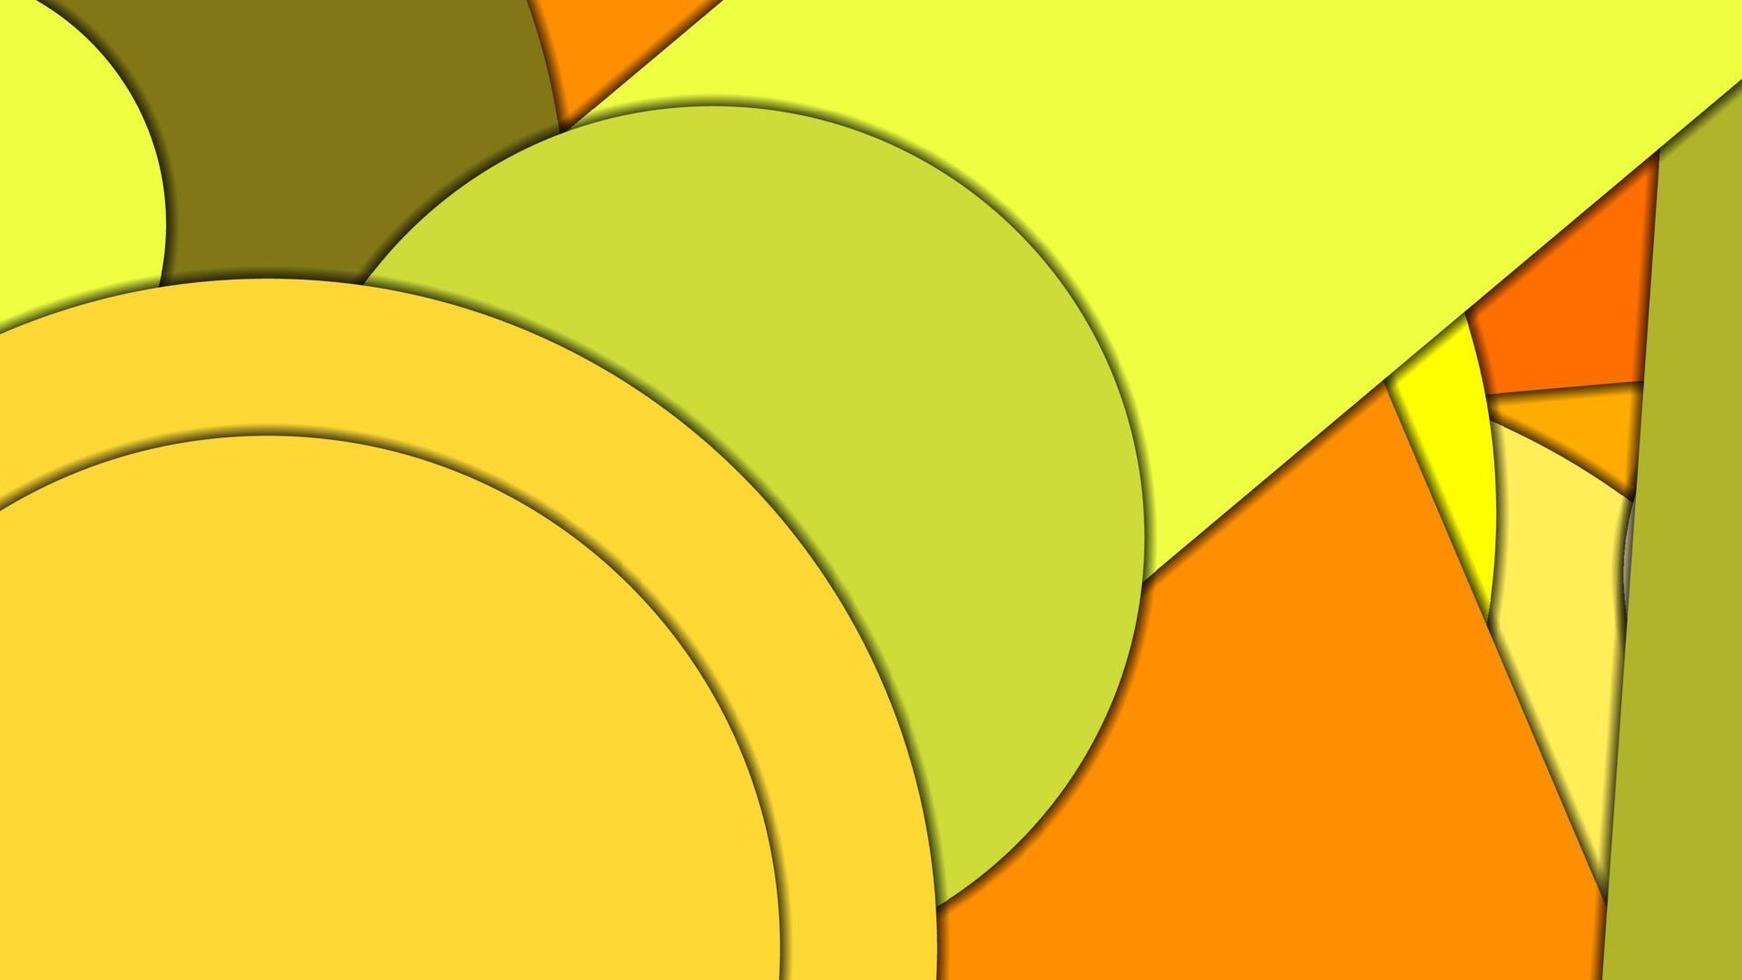 abstrakt geometrisk vektorbakgrund i materialdesignstil med en begränsad harmoniserad palett, med koncentriska cirklar och roterade rektanglar med skuggor, som imiterar klippt papper. vektor